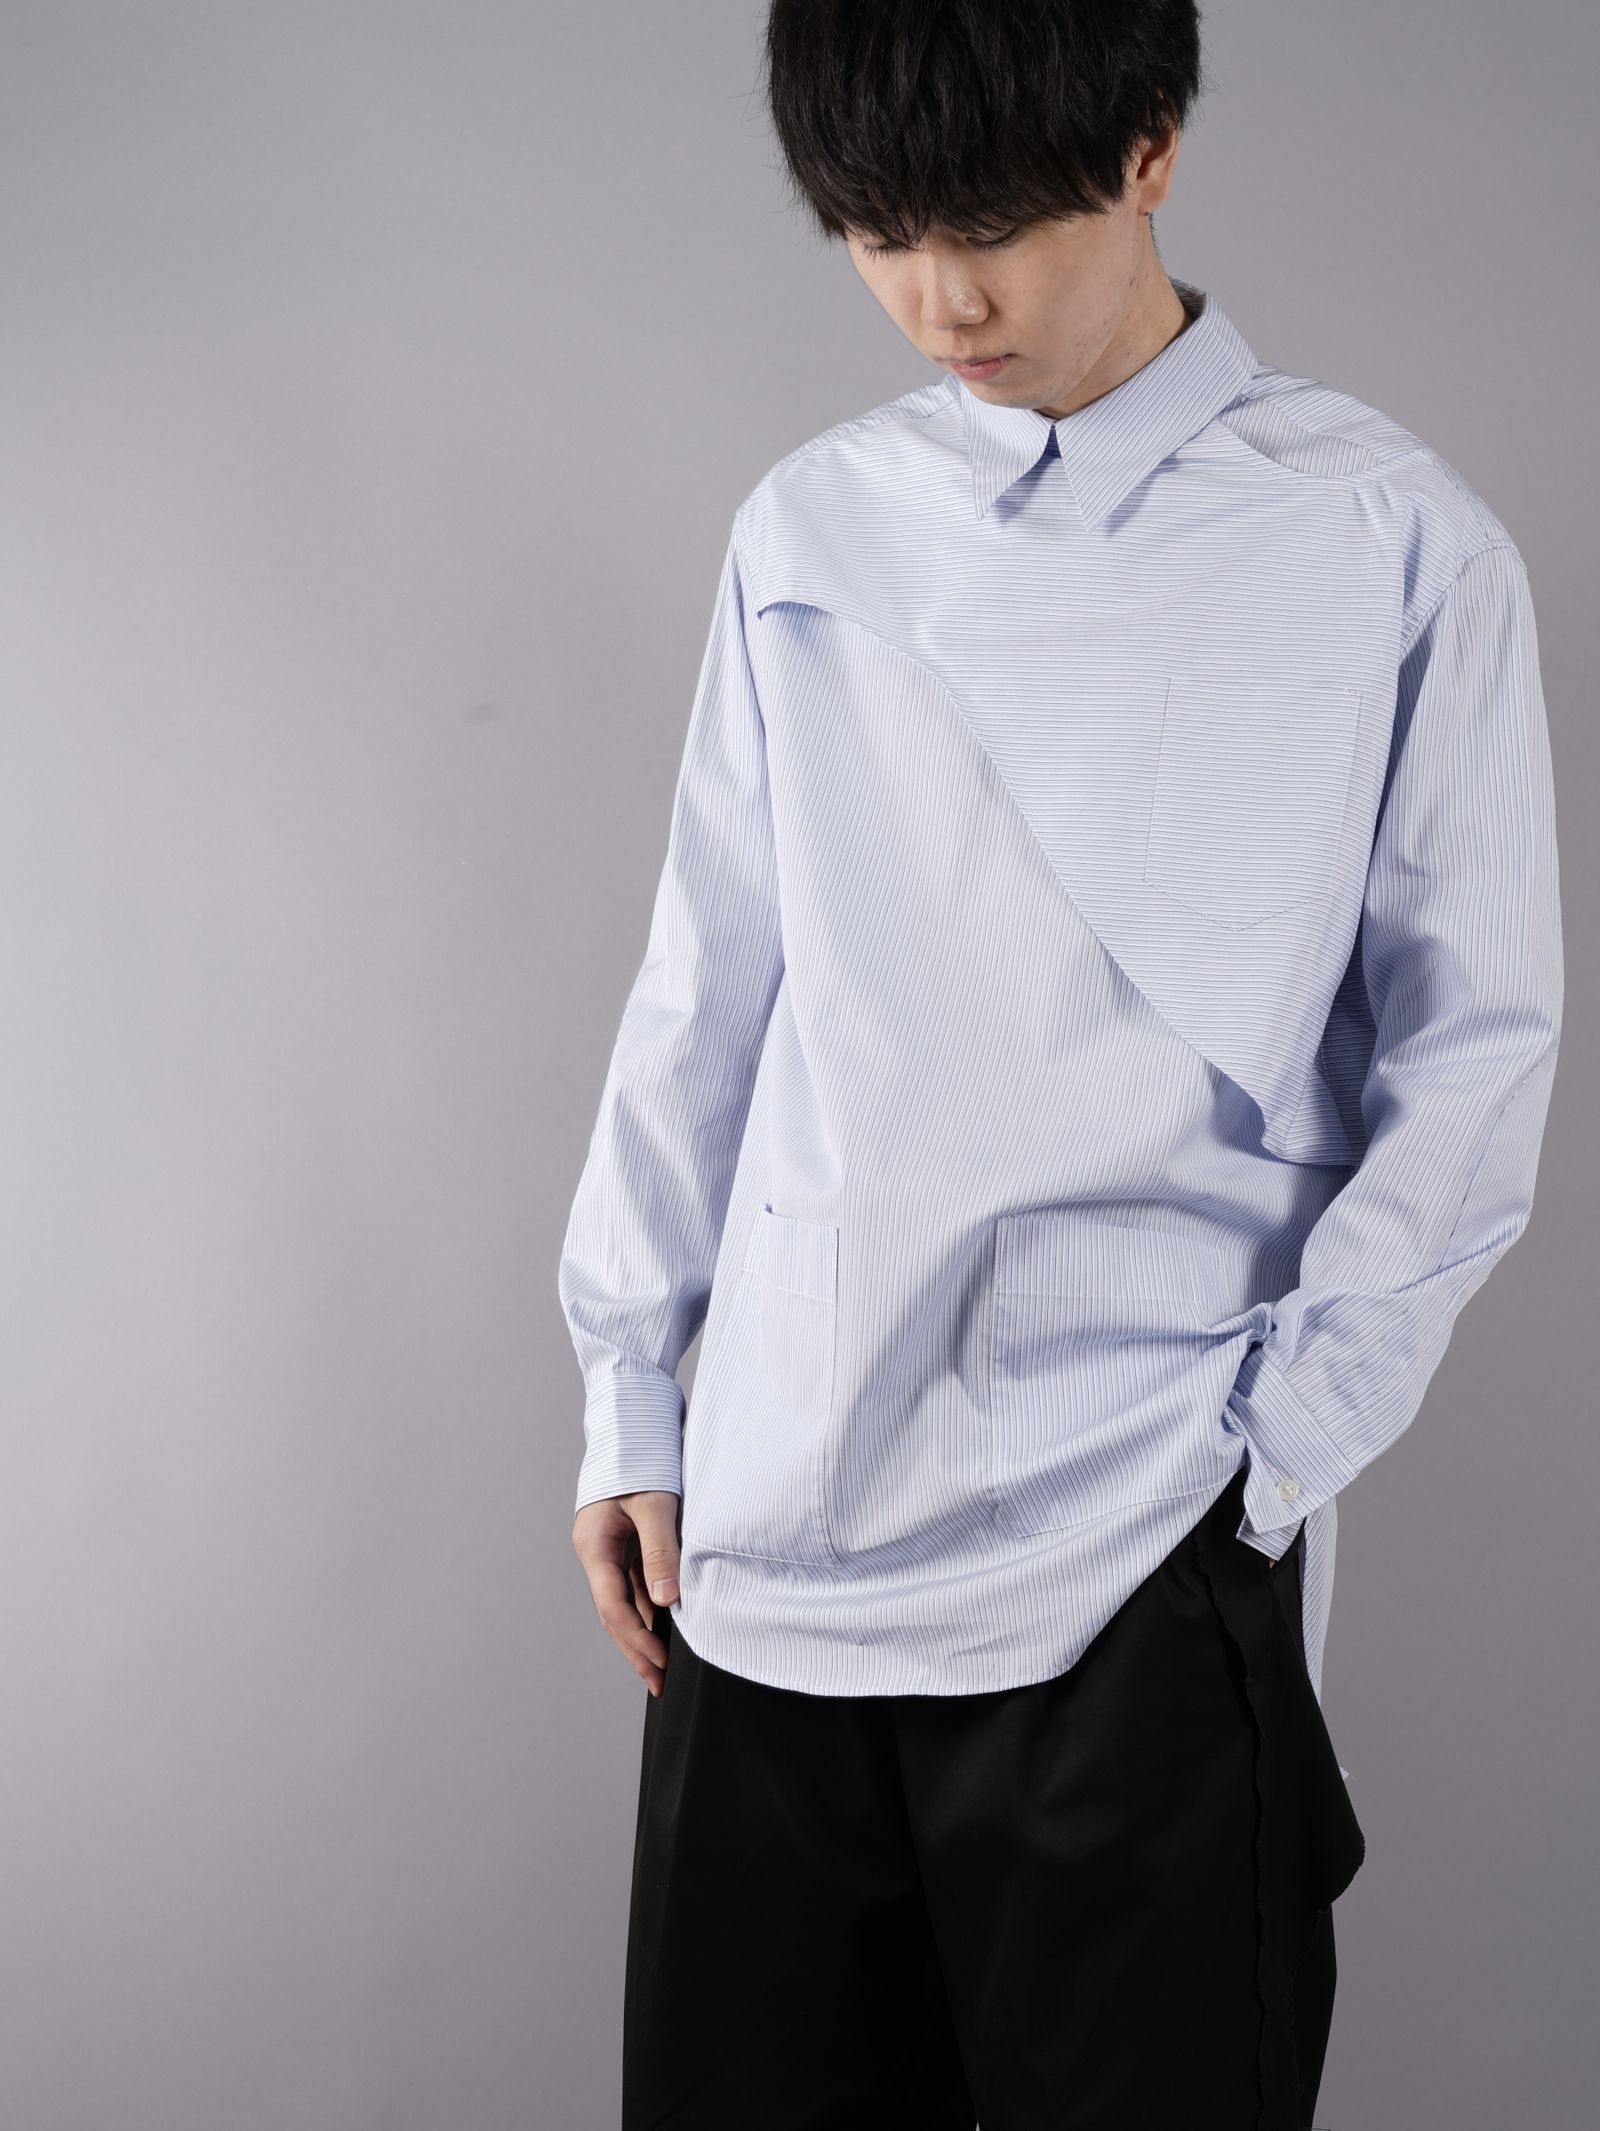 YUKI HASHIMOTO フロントバックシャツ サイズ46 www.krzysztofbialy.com